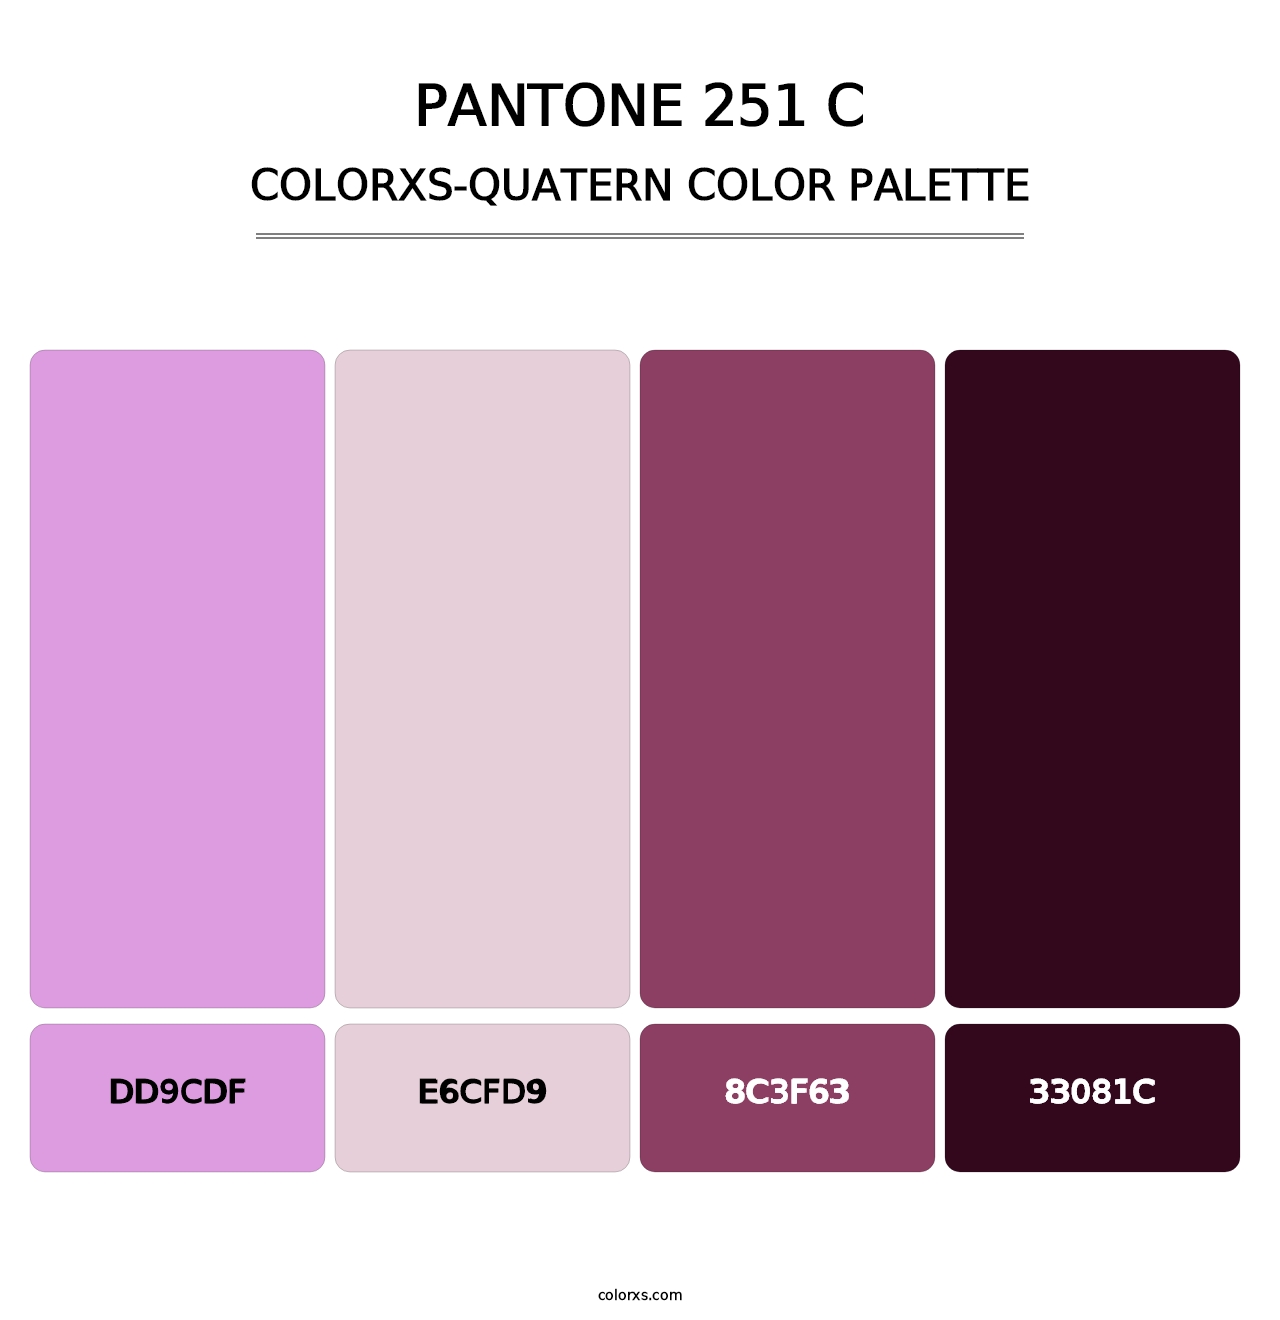 PANTONE 251 C - Colorxs Quatern Palette